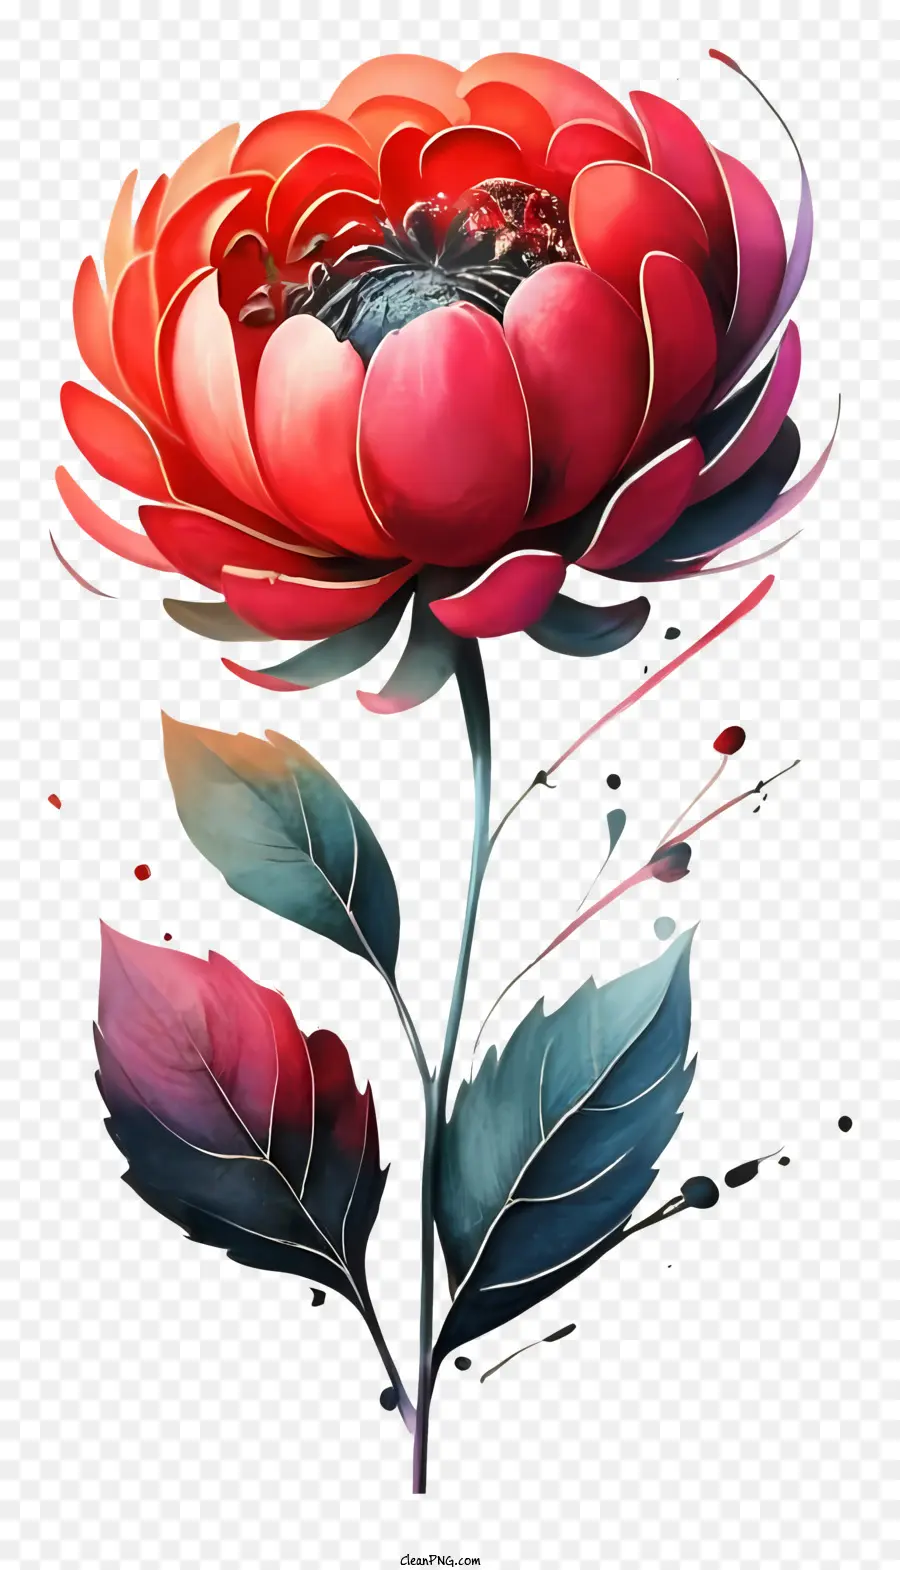 fiore rosso - Fiore rosso con foglie lunghe e petali scuri